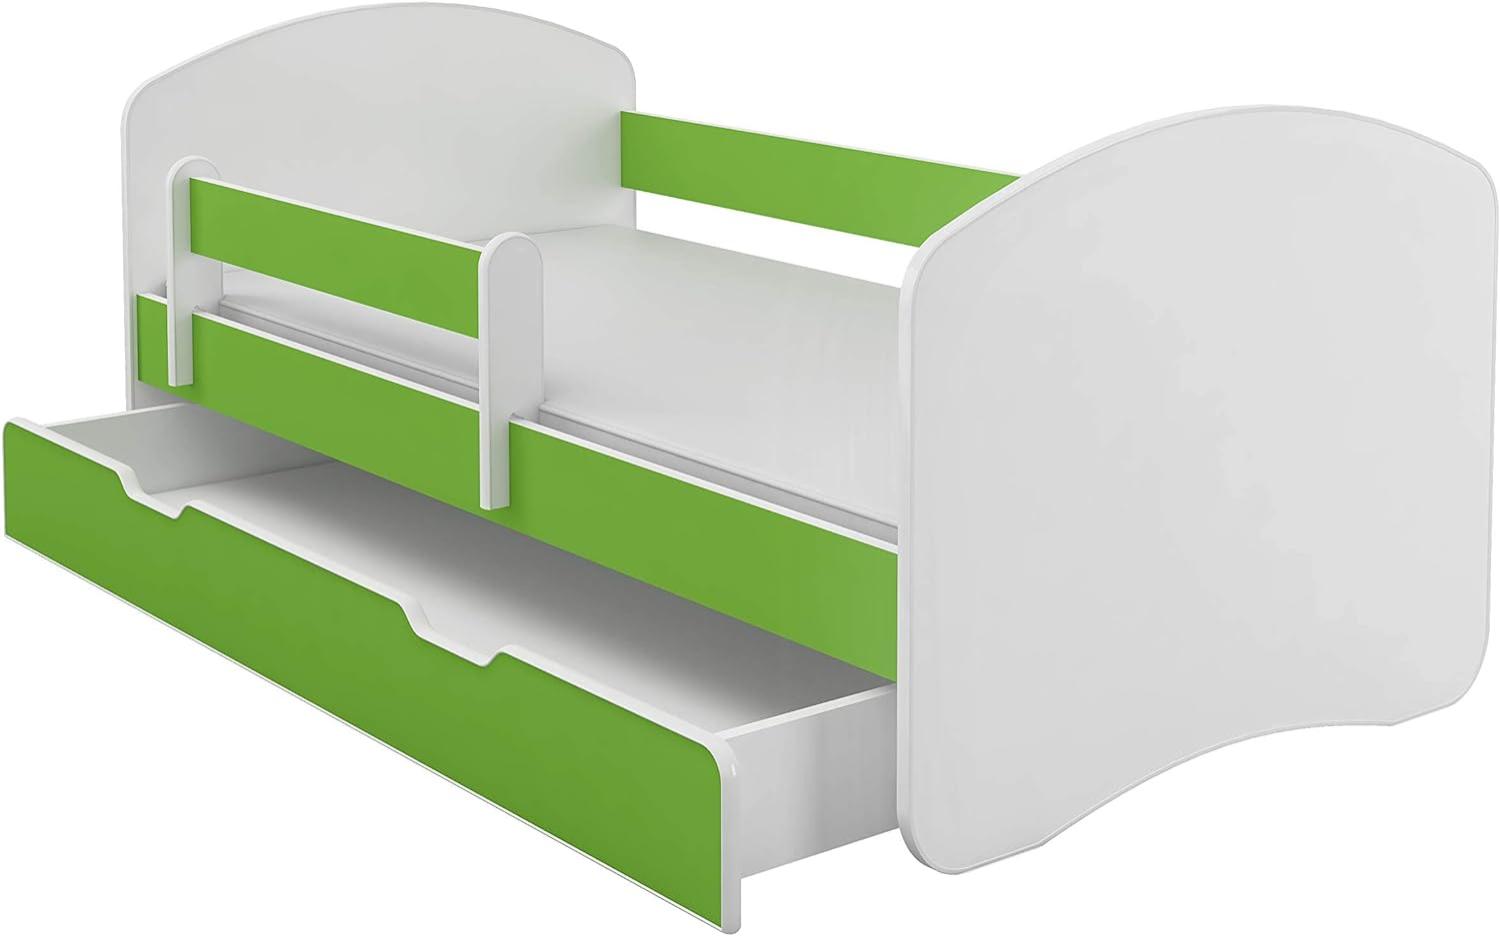 Kinderbett Jugendbett mit einer Schublade und Matratze Weiß ACMA II (180x80 cm + Schublade, Grün) Bild 1